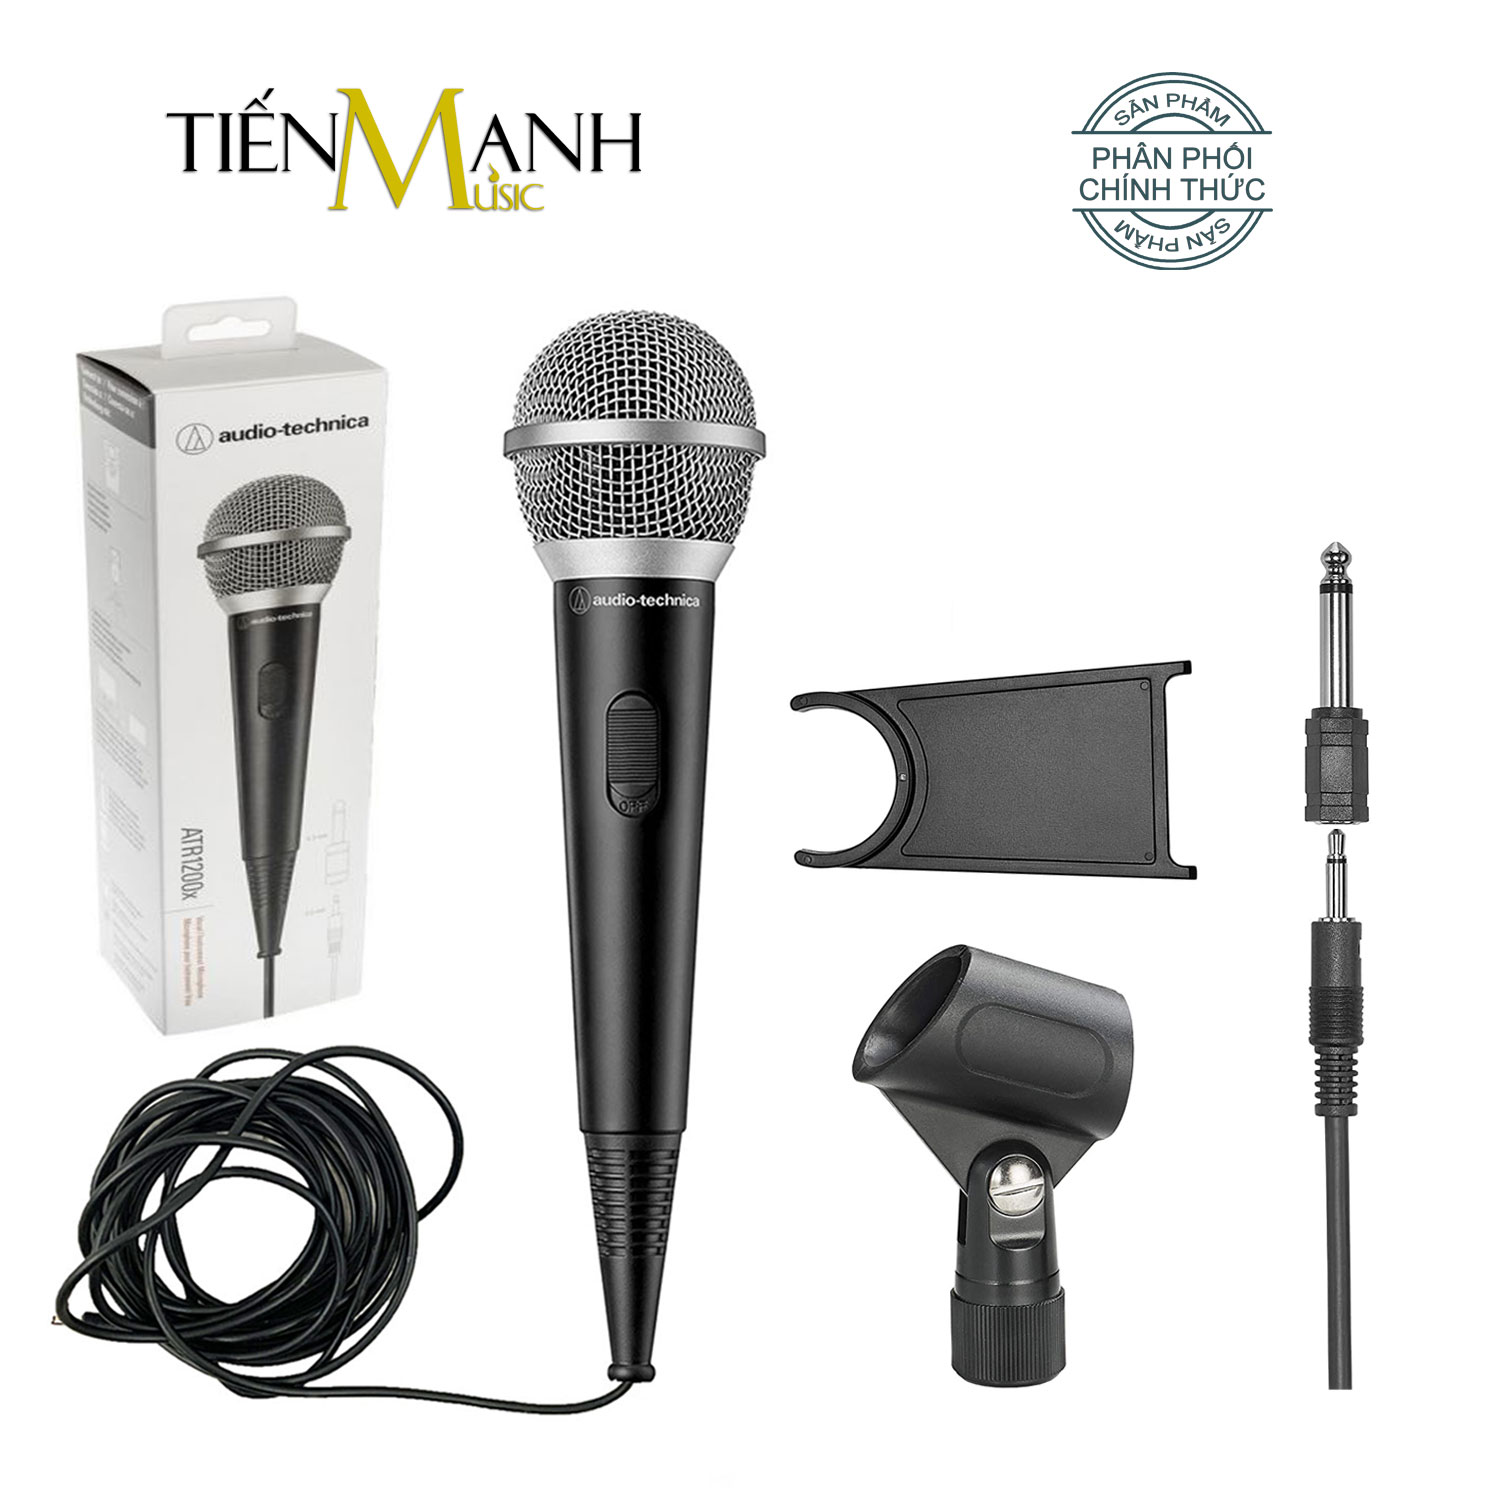 [Chính Hãng Japan] Mic Hát Karaoke Audio Technica ATR1200X - Có Dây 5m Thu Âm Vocal Micro Dynamic Biểu Diễn chuyên nghiệp Microphone